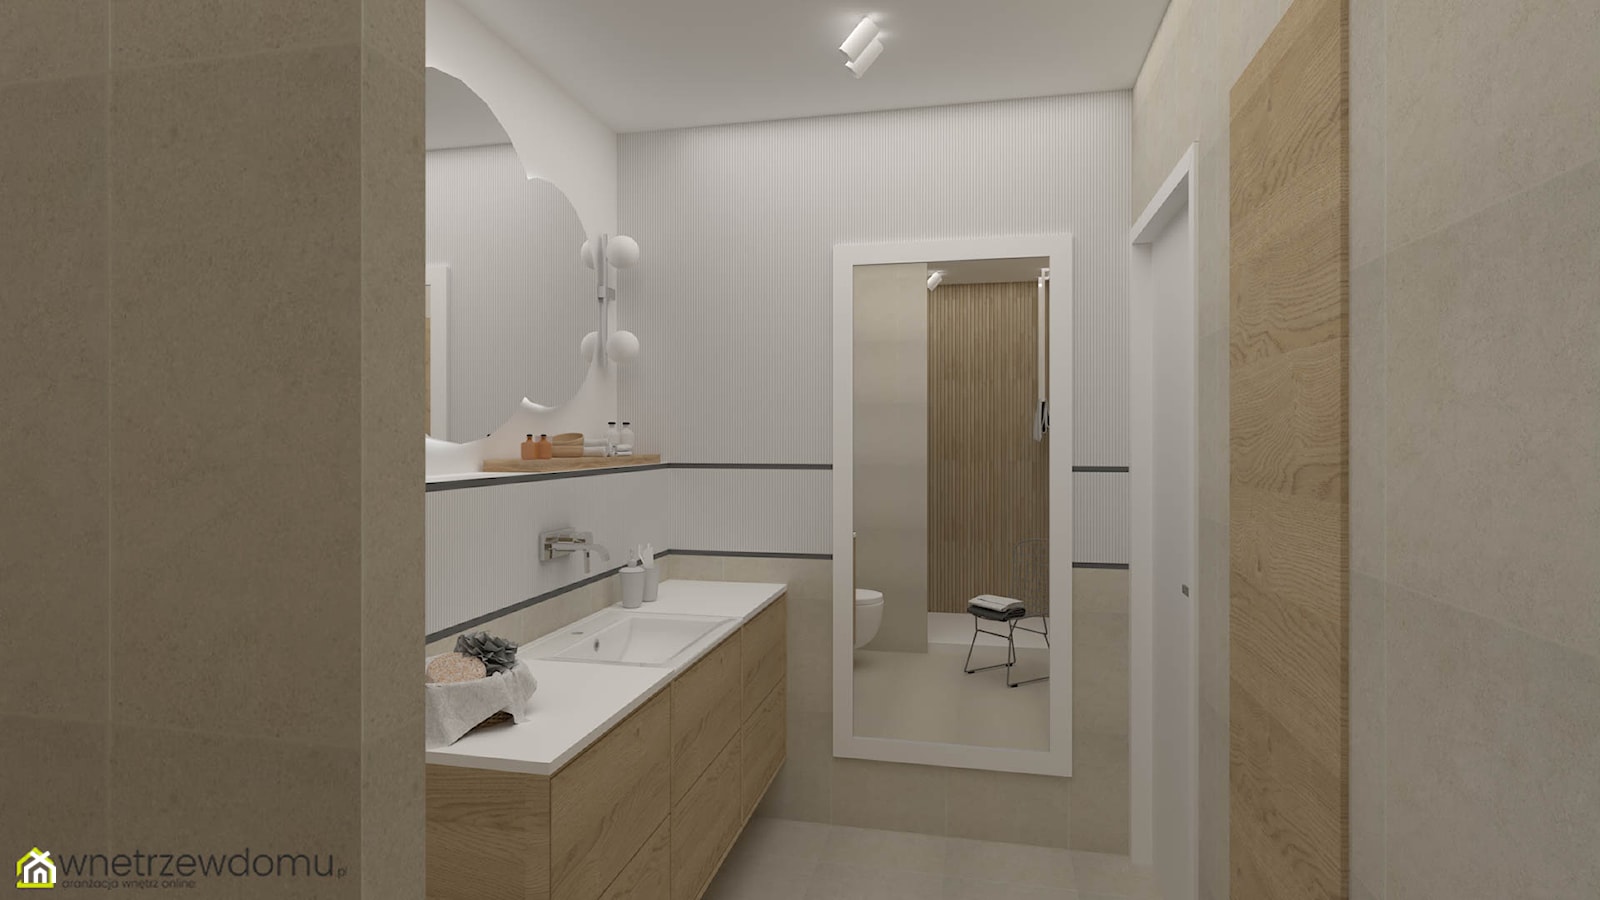 Biel i drewno w niewielkiej łazience ze ścianką prysznicową - zdjęcie od wnetrzewdomu - Homebook